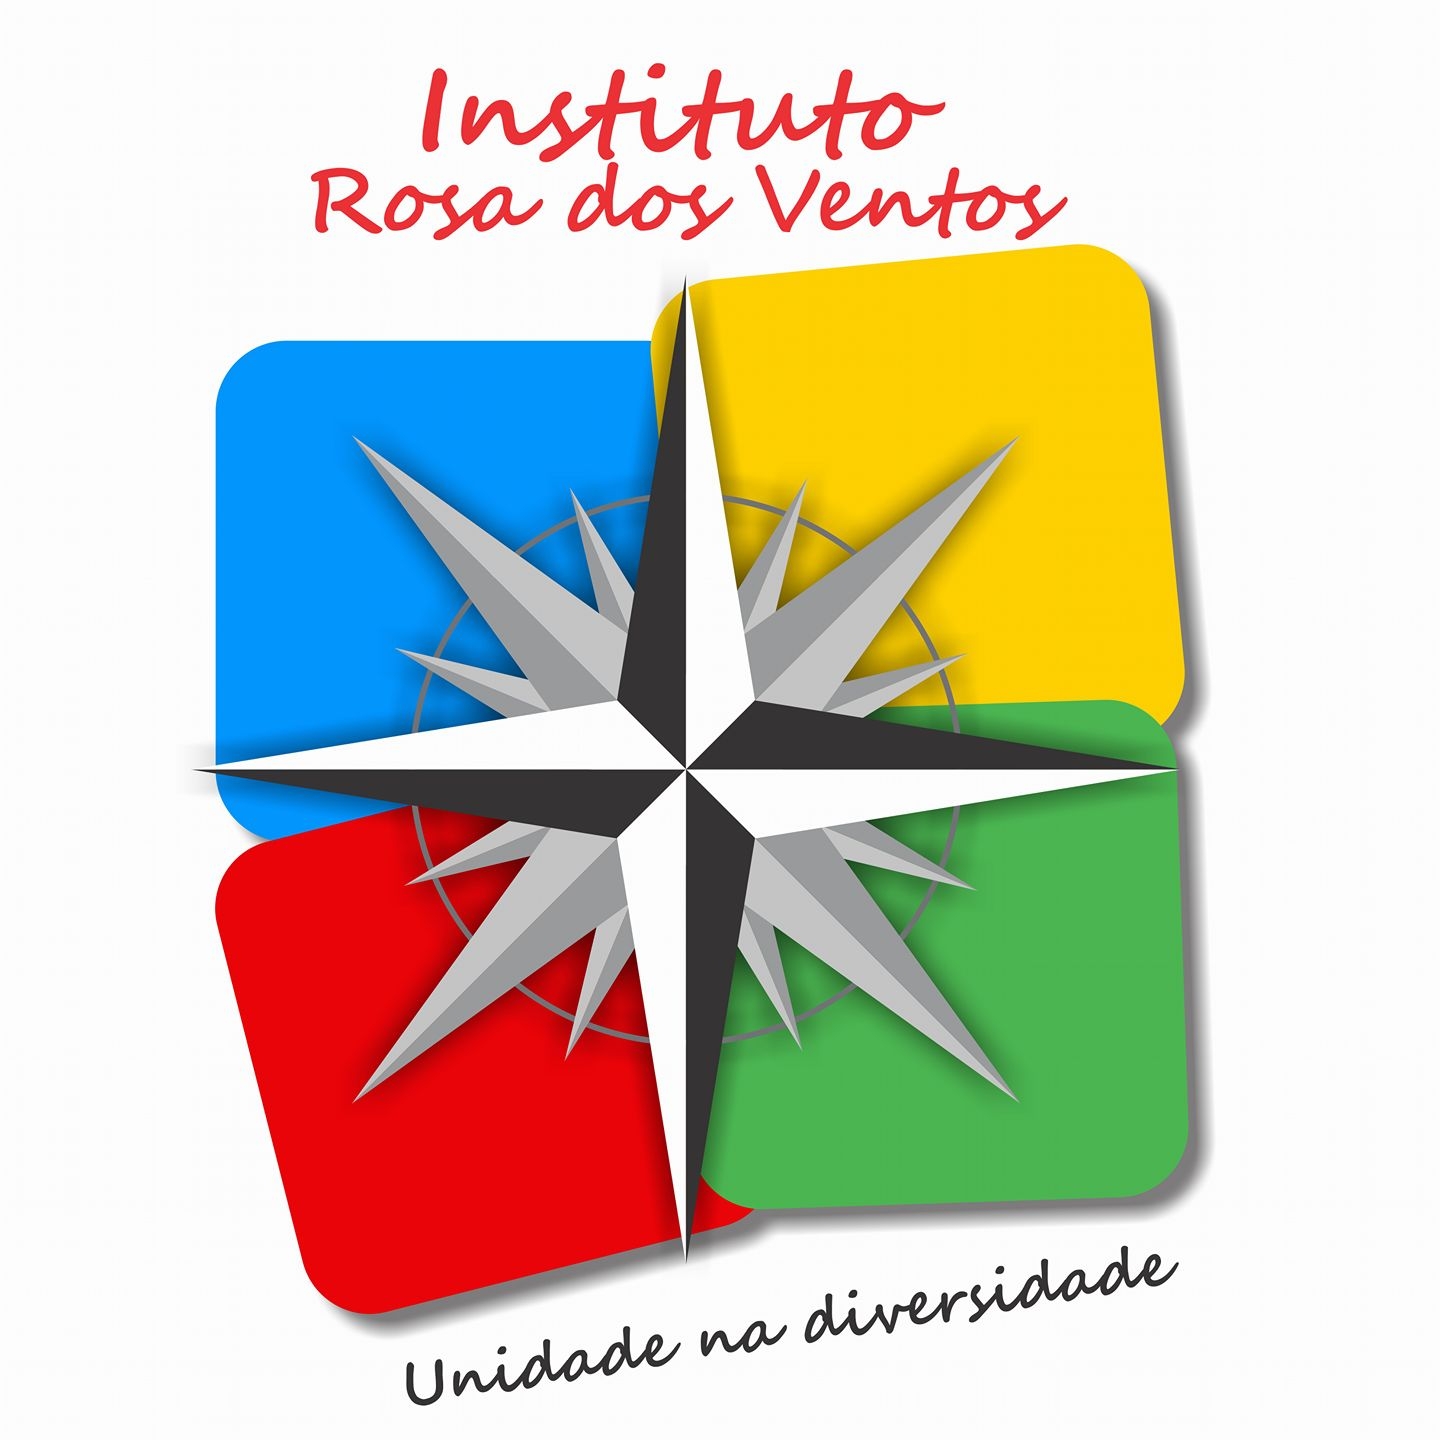 IRV – Instituto Rosa dos Ventos